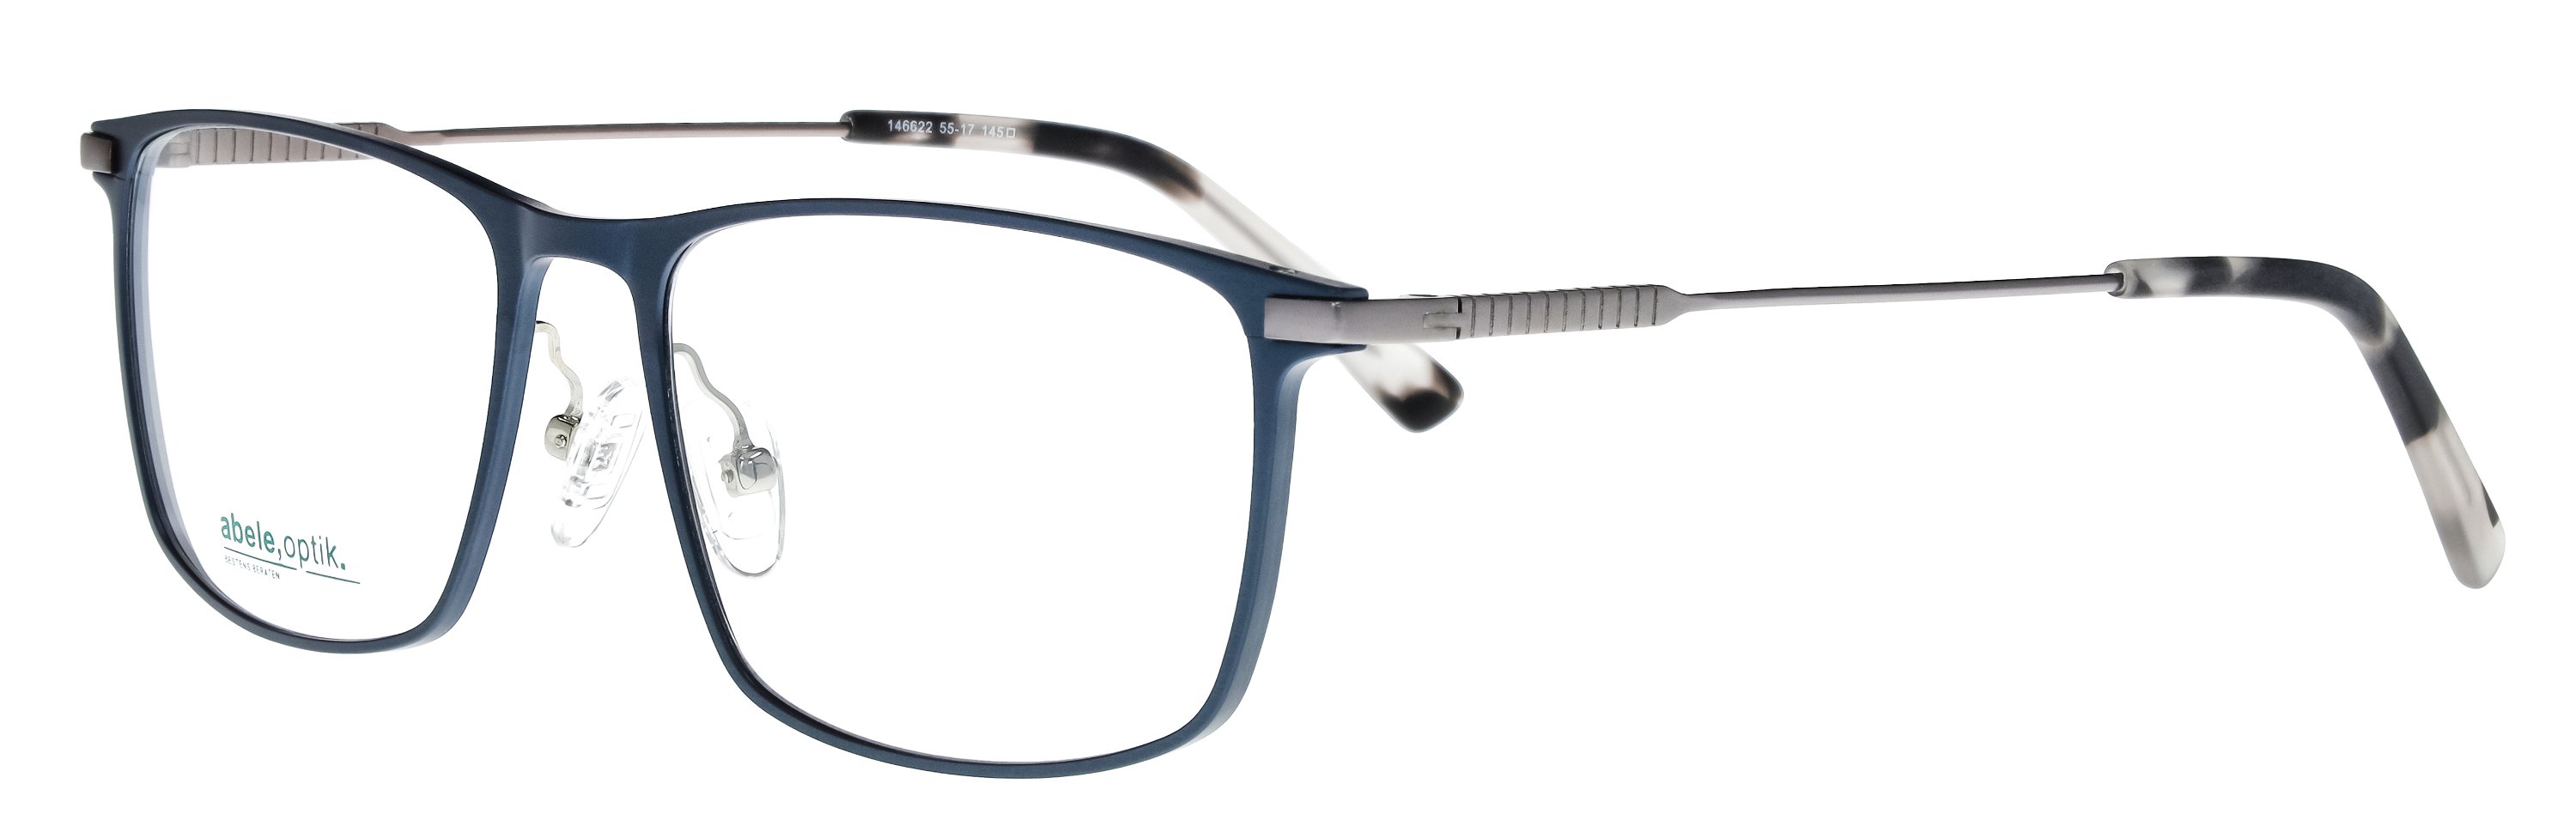 Das Bild zeigt die Korrektionsbrille 146622 von der Marke Abele Optik in blau matt.